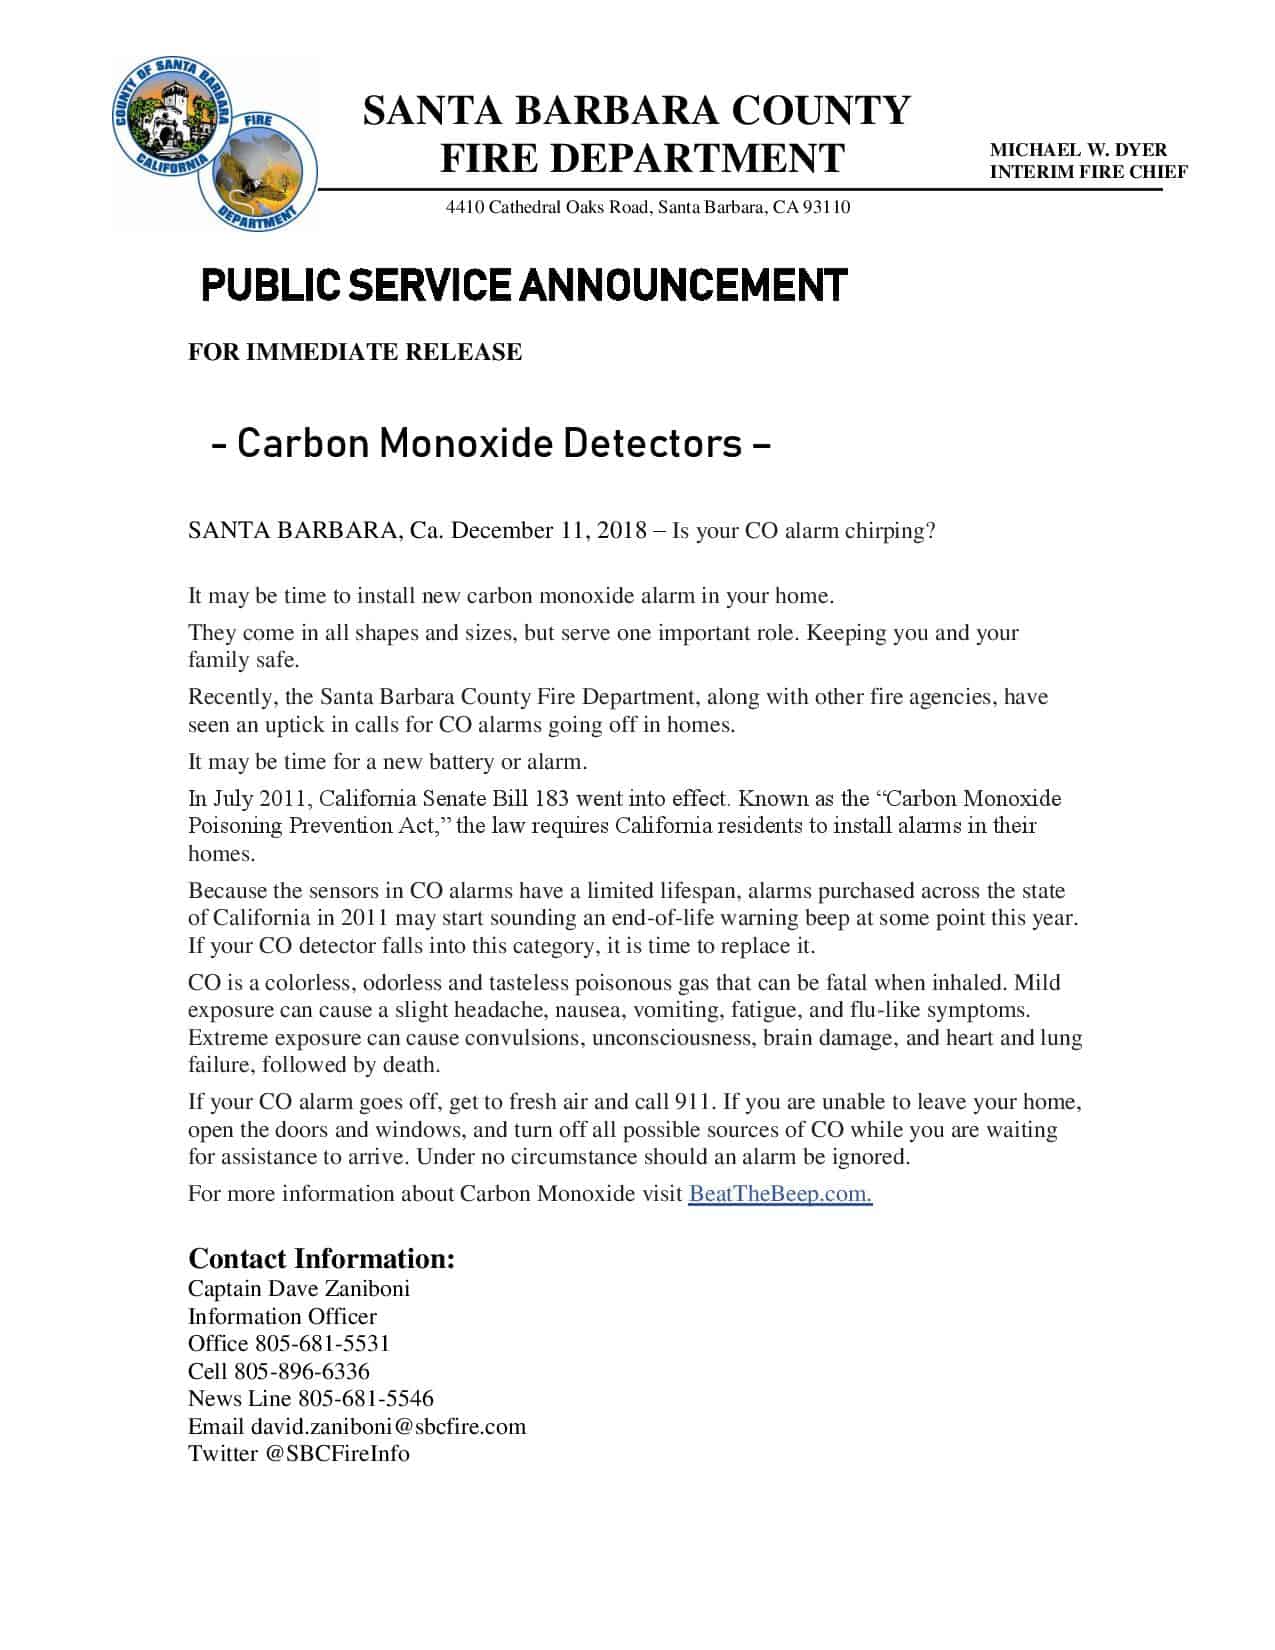 Carbon Monoxide Detectors PSA